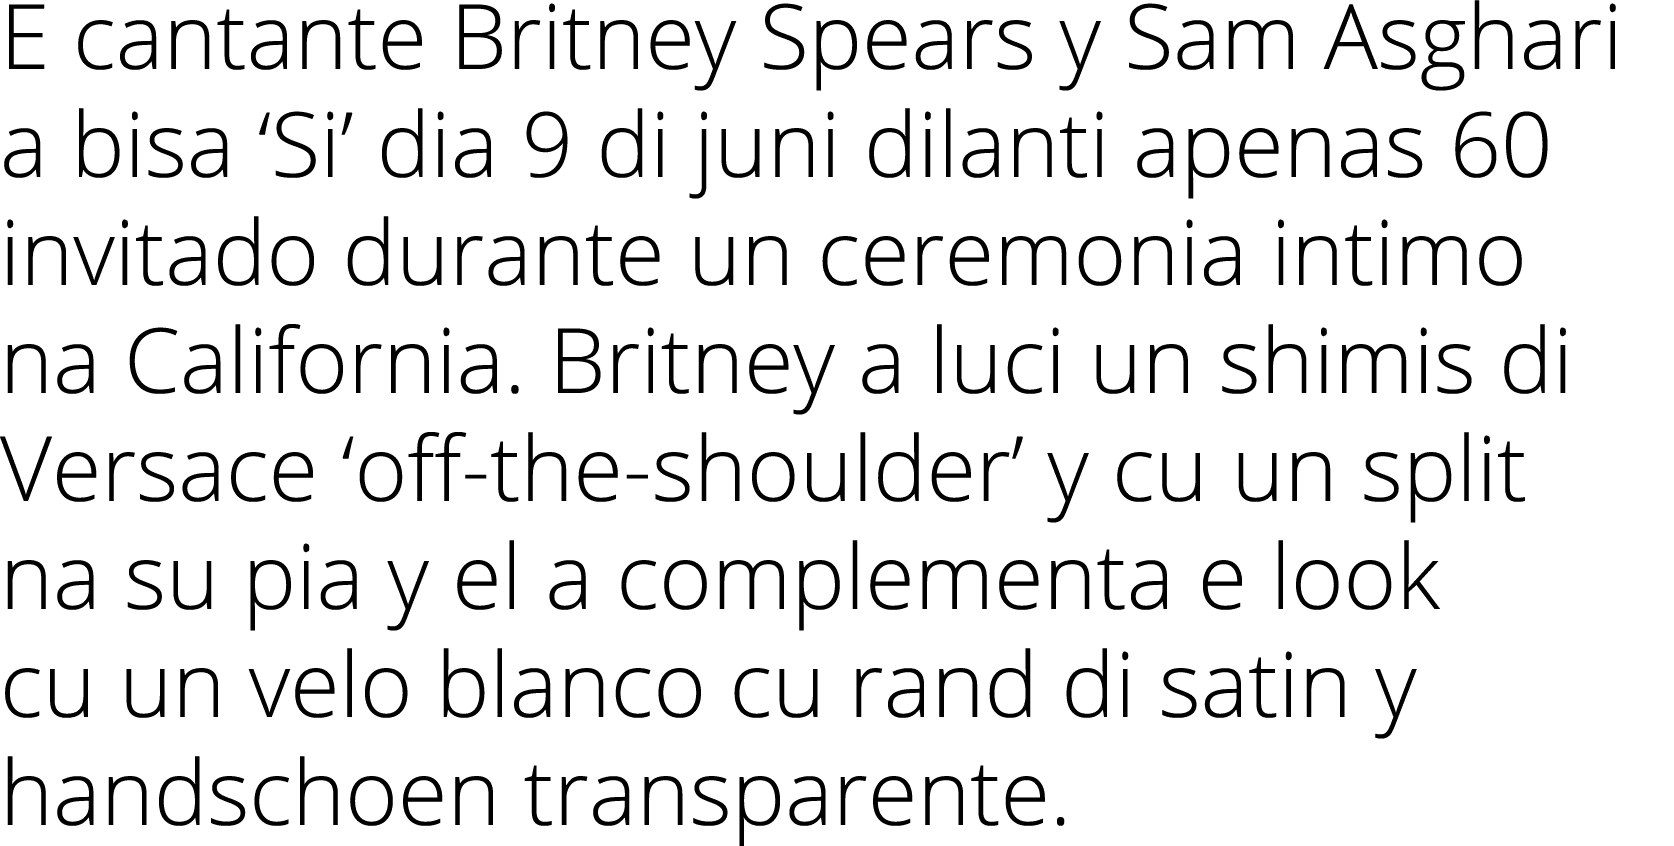 E cantante Britney Spears y Sam Asghari a bisa ‘Si’ dia 9 di juni dilanti apenas 60 invitado durante un ceremonia int...